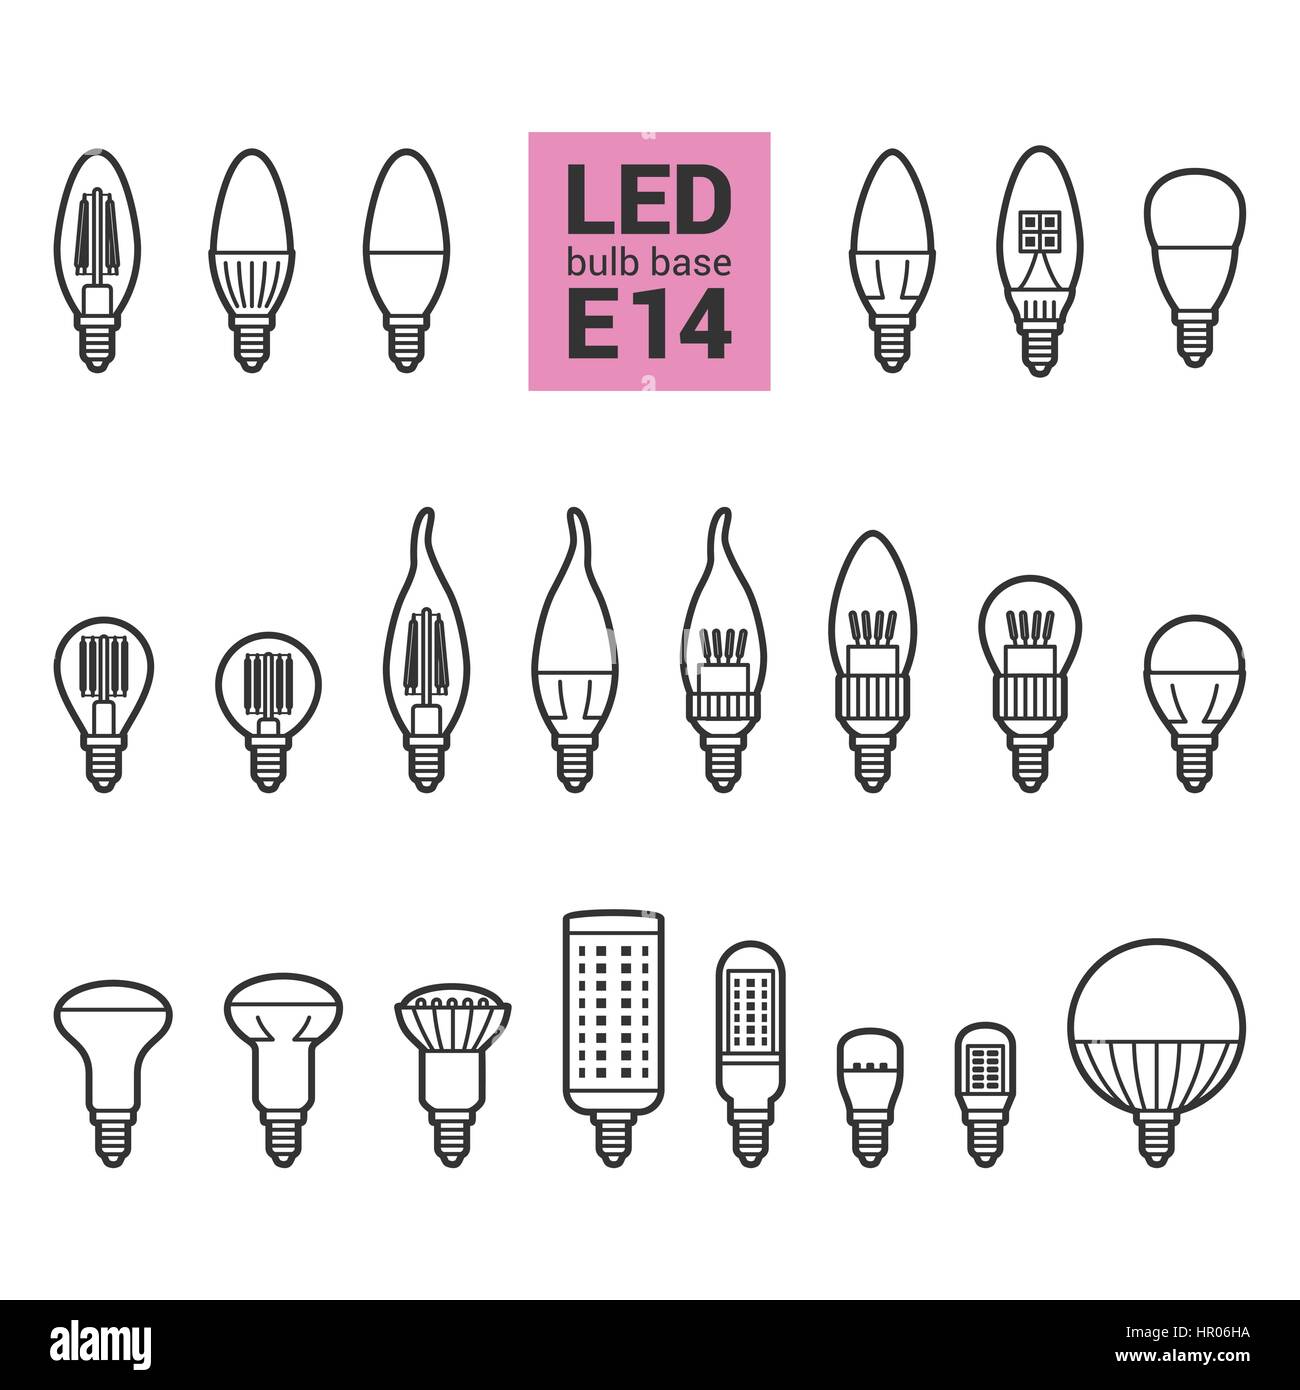 LED-Lampen mit E14 Sockel, Vektor-Übersicht-Symbol auf weißem Hintergrund  festlegen Stock-Vektorgrafik - Alamy